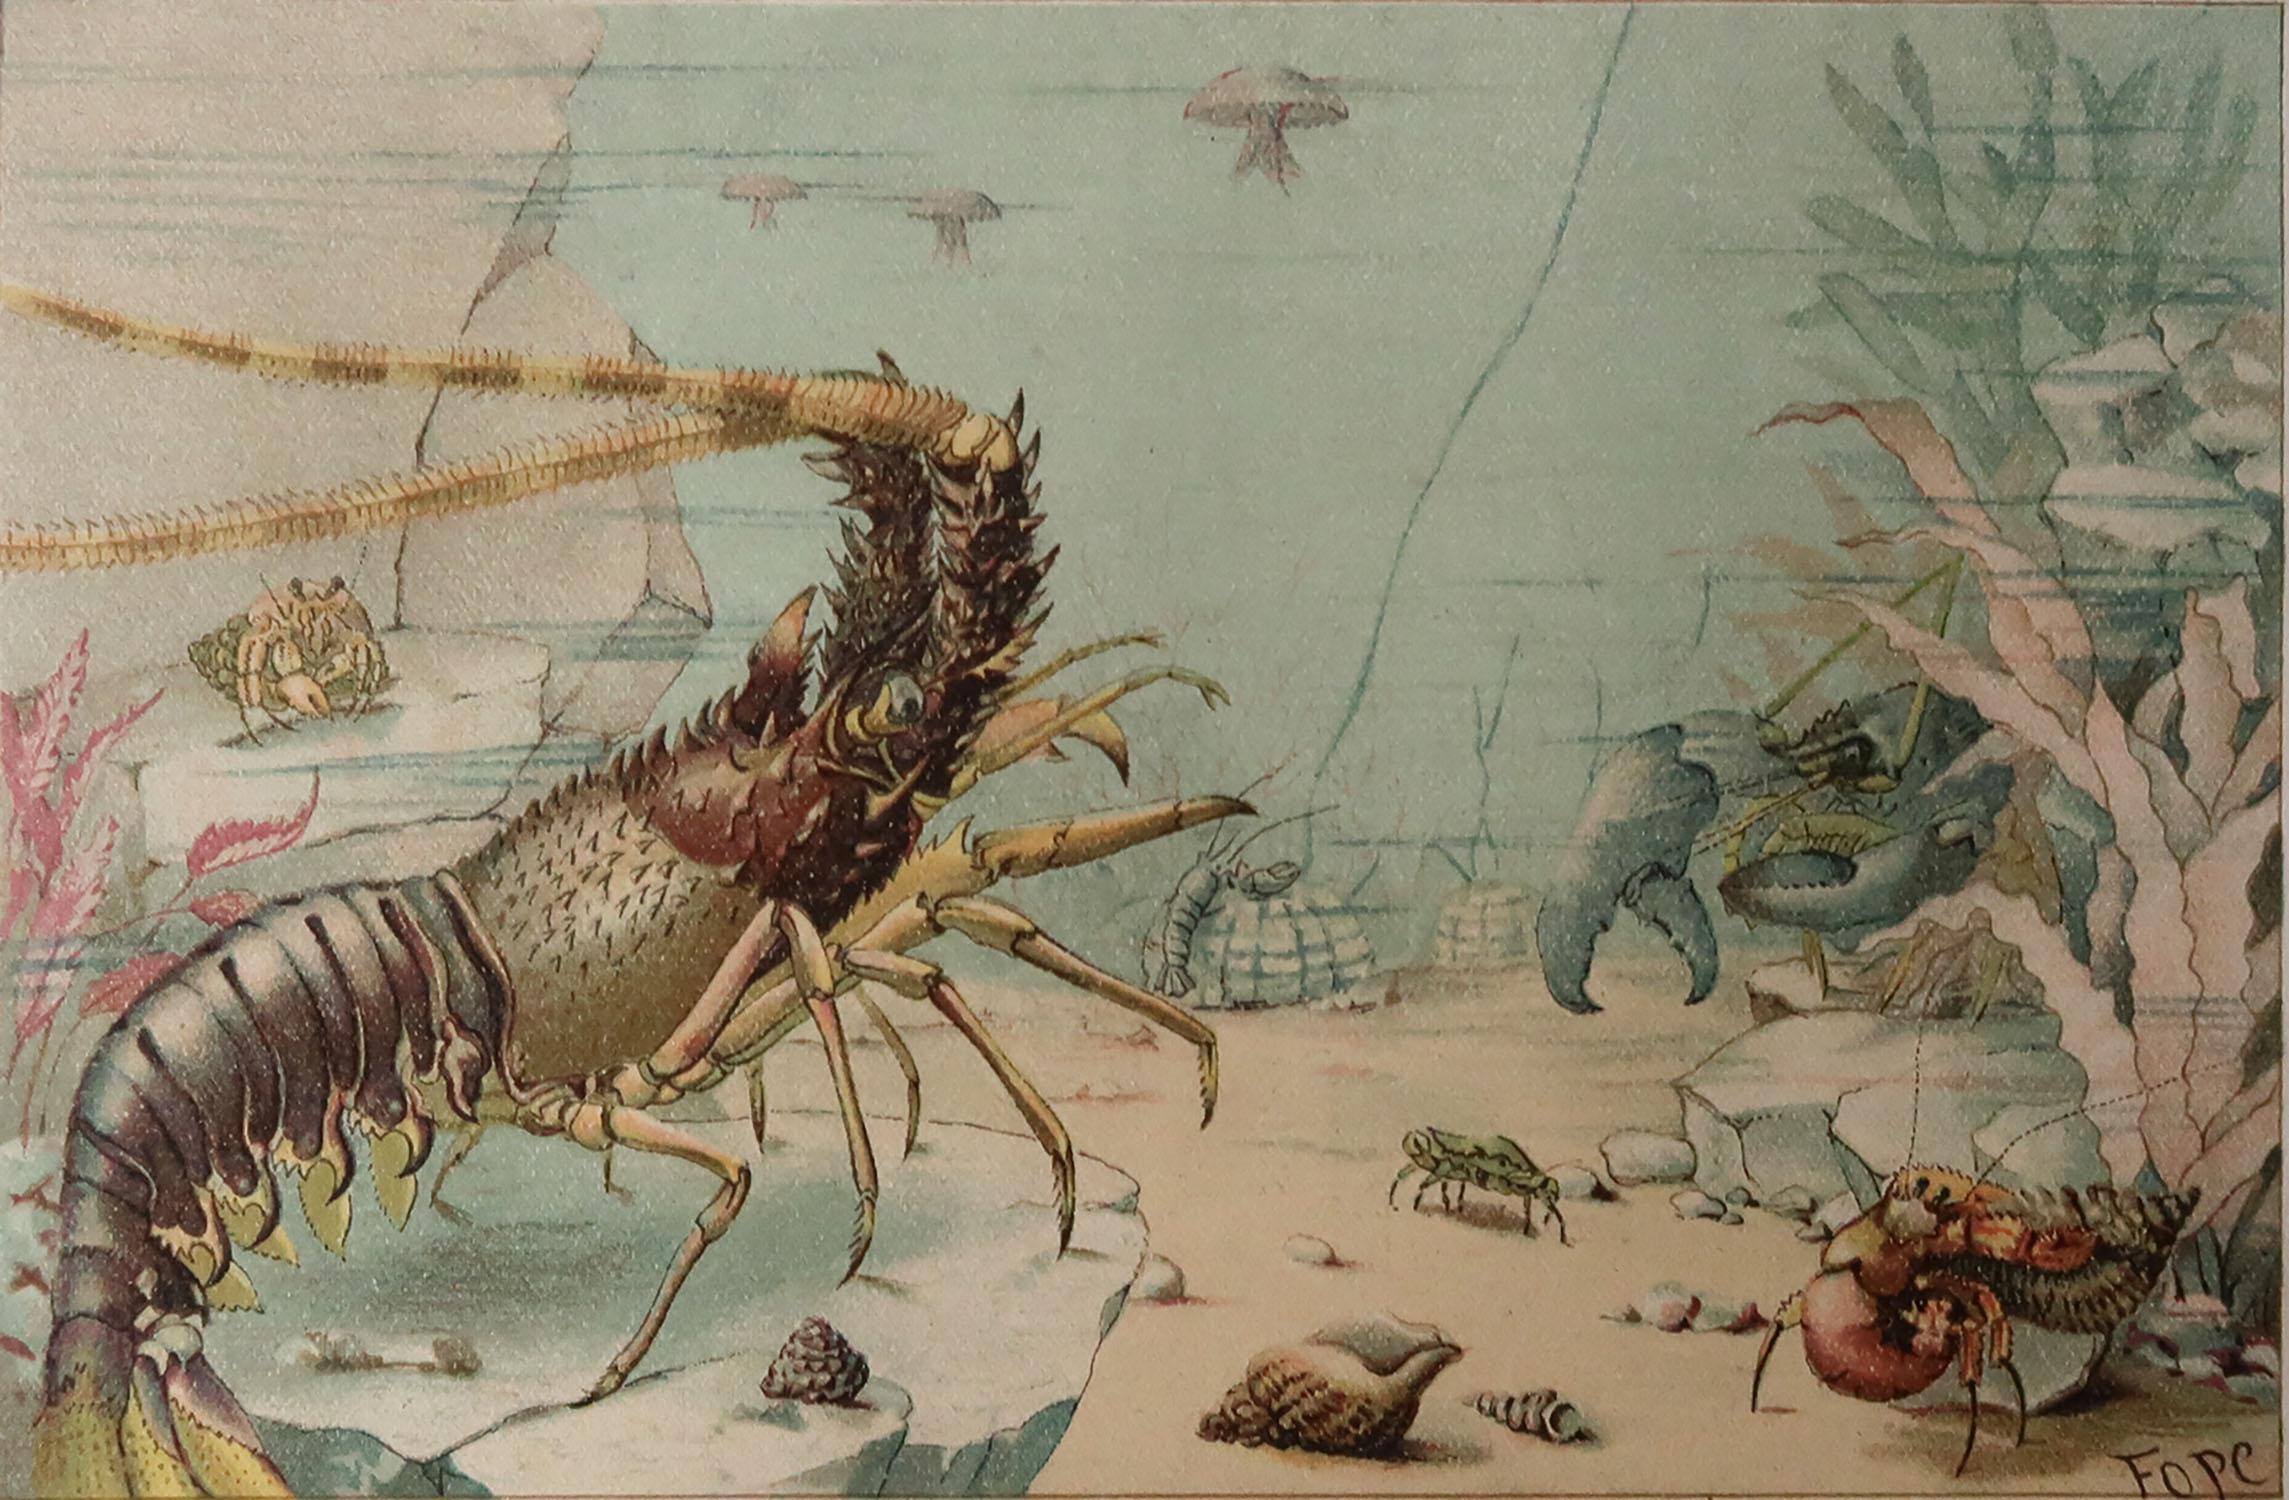 Superbe image de homards

Non encadré. Il vous donne la possibilité de réaliser un montage en utilisant les cadres de votre choix.

Lithographie. Couleur originale. 

Publié, C.1870

Livraison gratuite.






